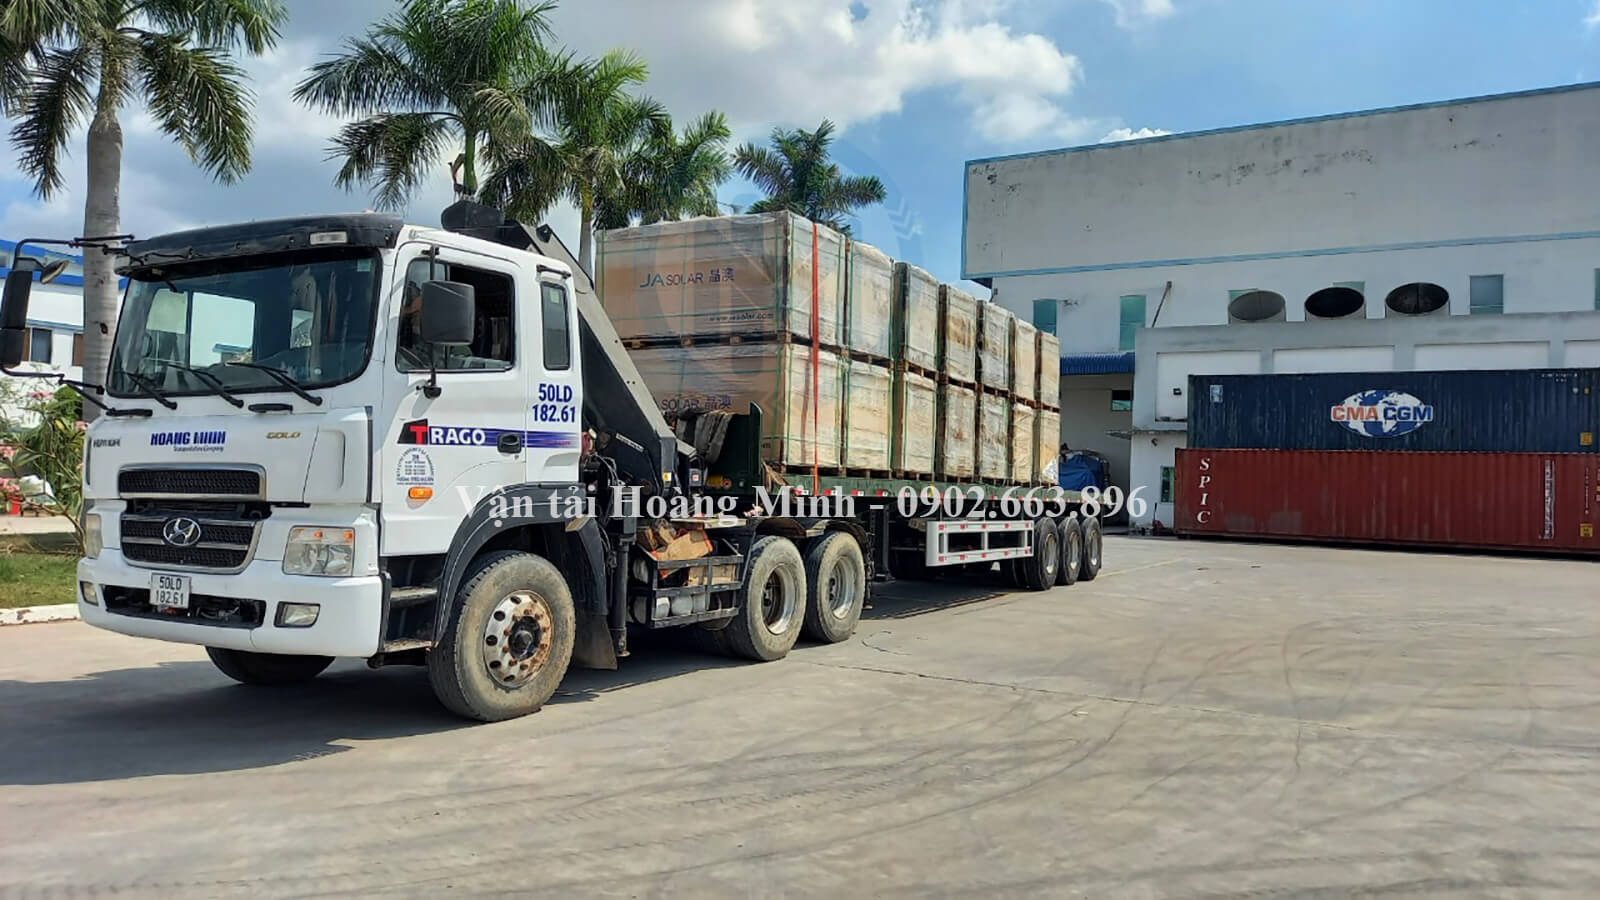 Hoàng Minh đang vận chuyển hàng hoá tại xưởng Tiền Giang.jpg